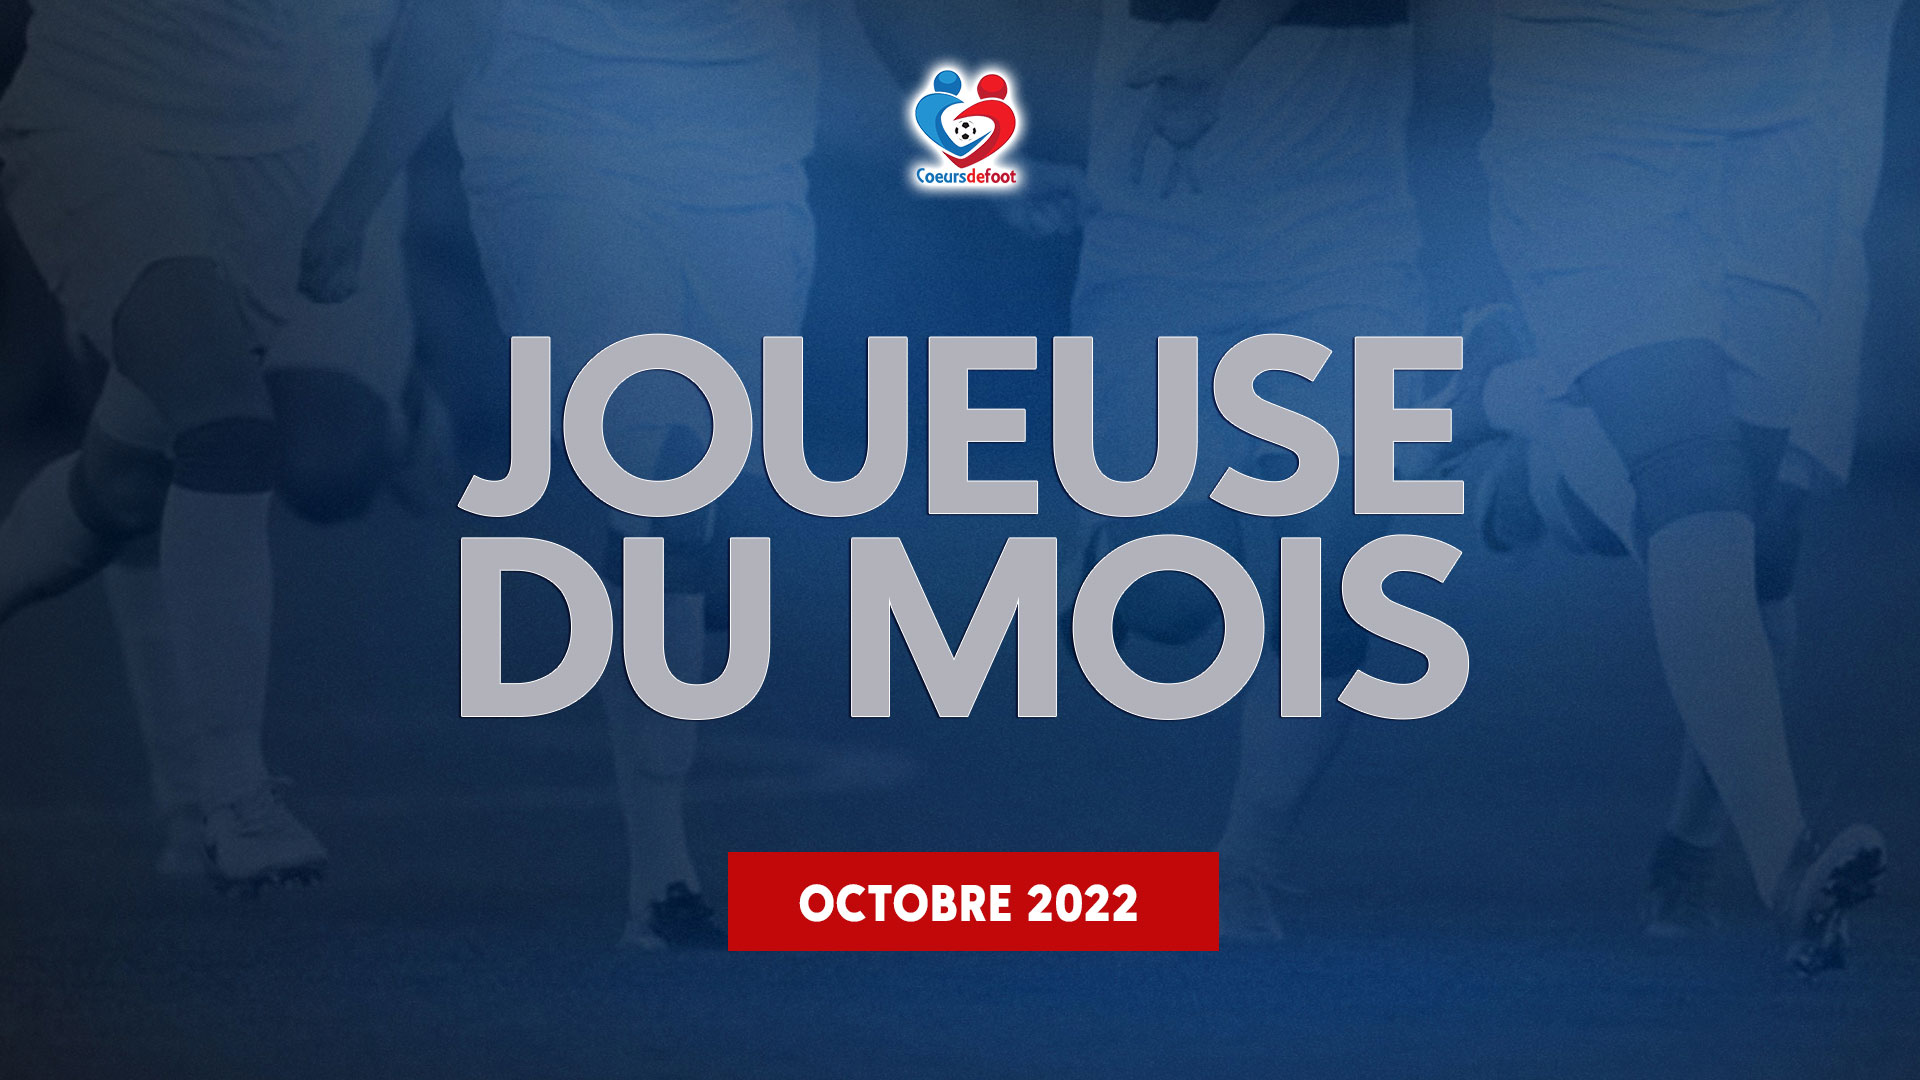 D1 - Découvrez la joueuse Cœurs de Foot du mois d'octobre 2022 !